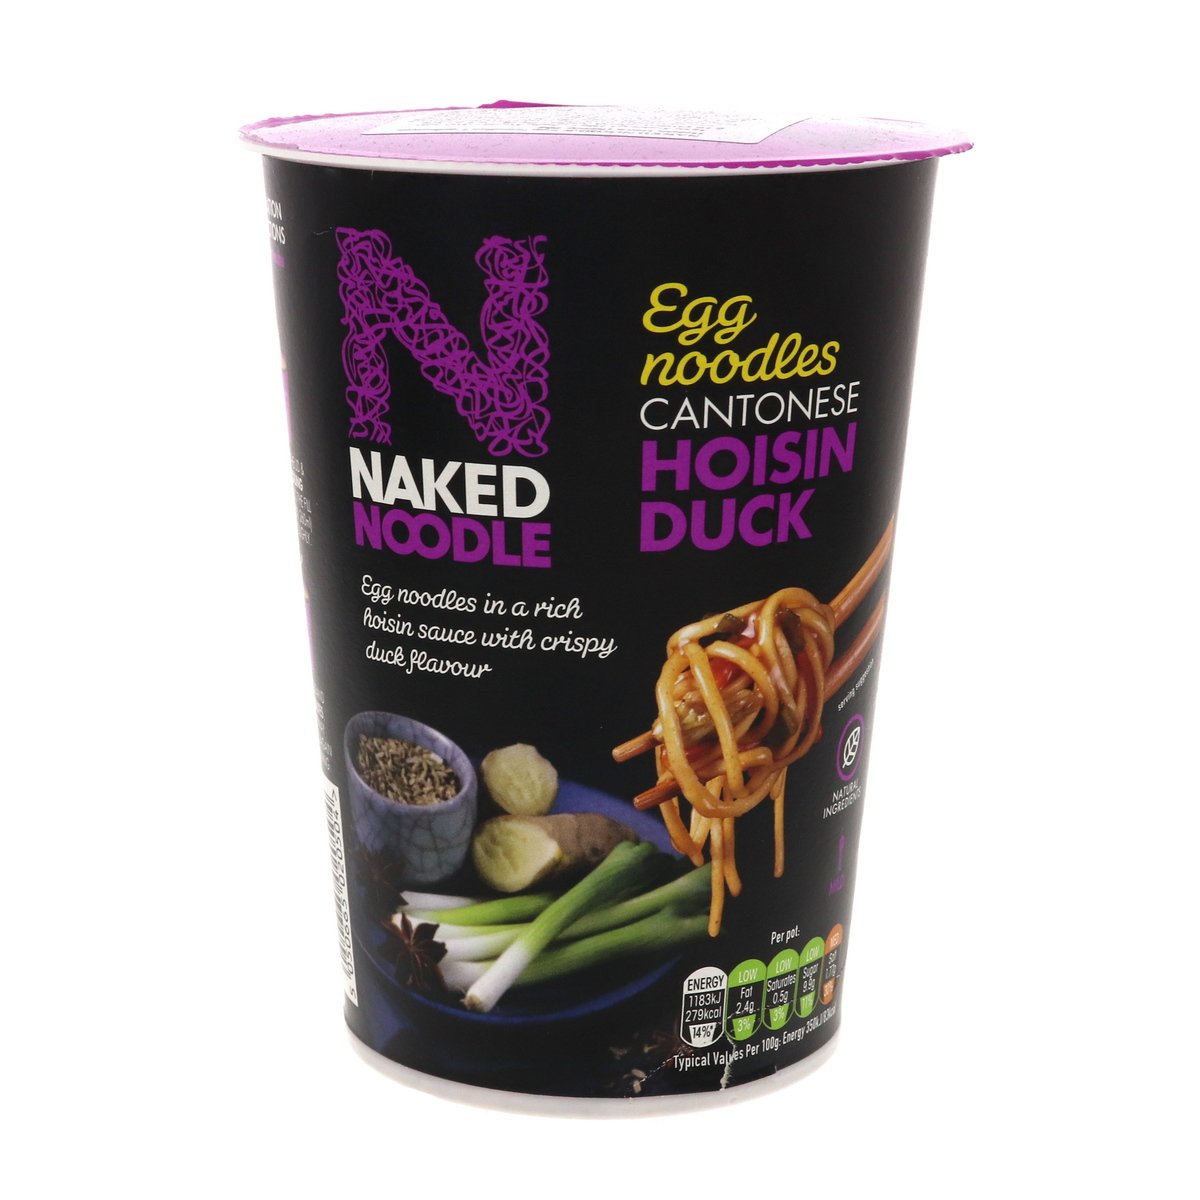 Naked Egg Noodles Cantonese Hoisin Duck Flavour 78g Online at Best ...